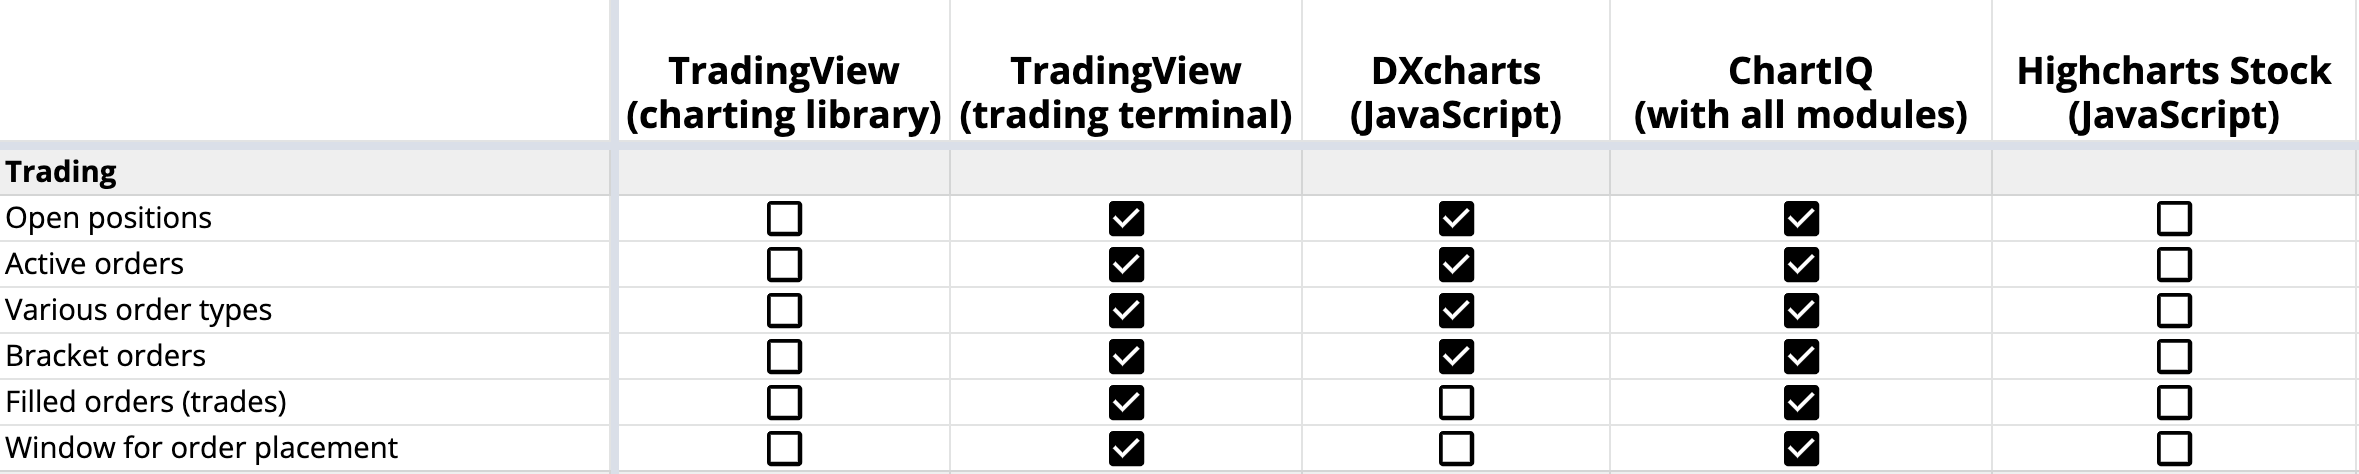 Графическая торговля (ордера и позиции) в TradingView, DXcharts, ChartIQ и Highcharts